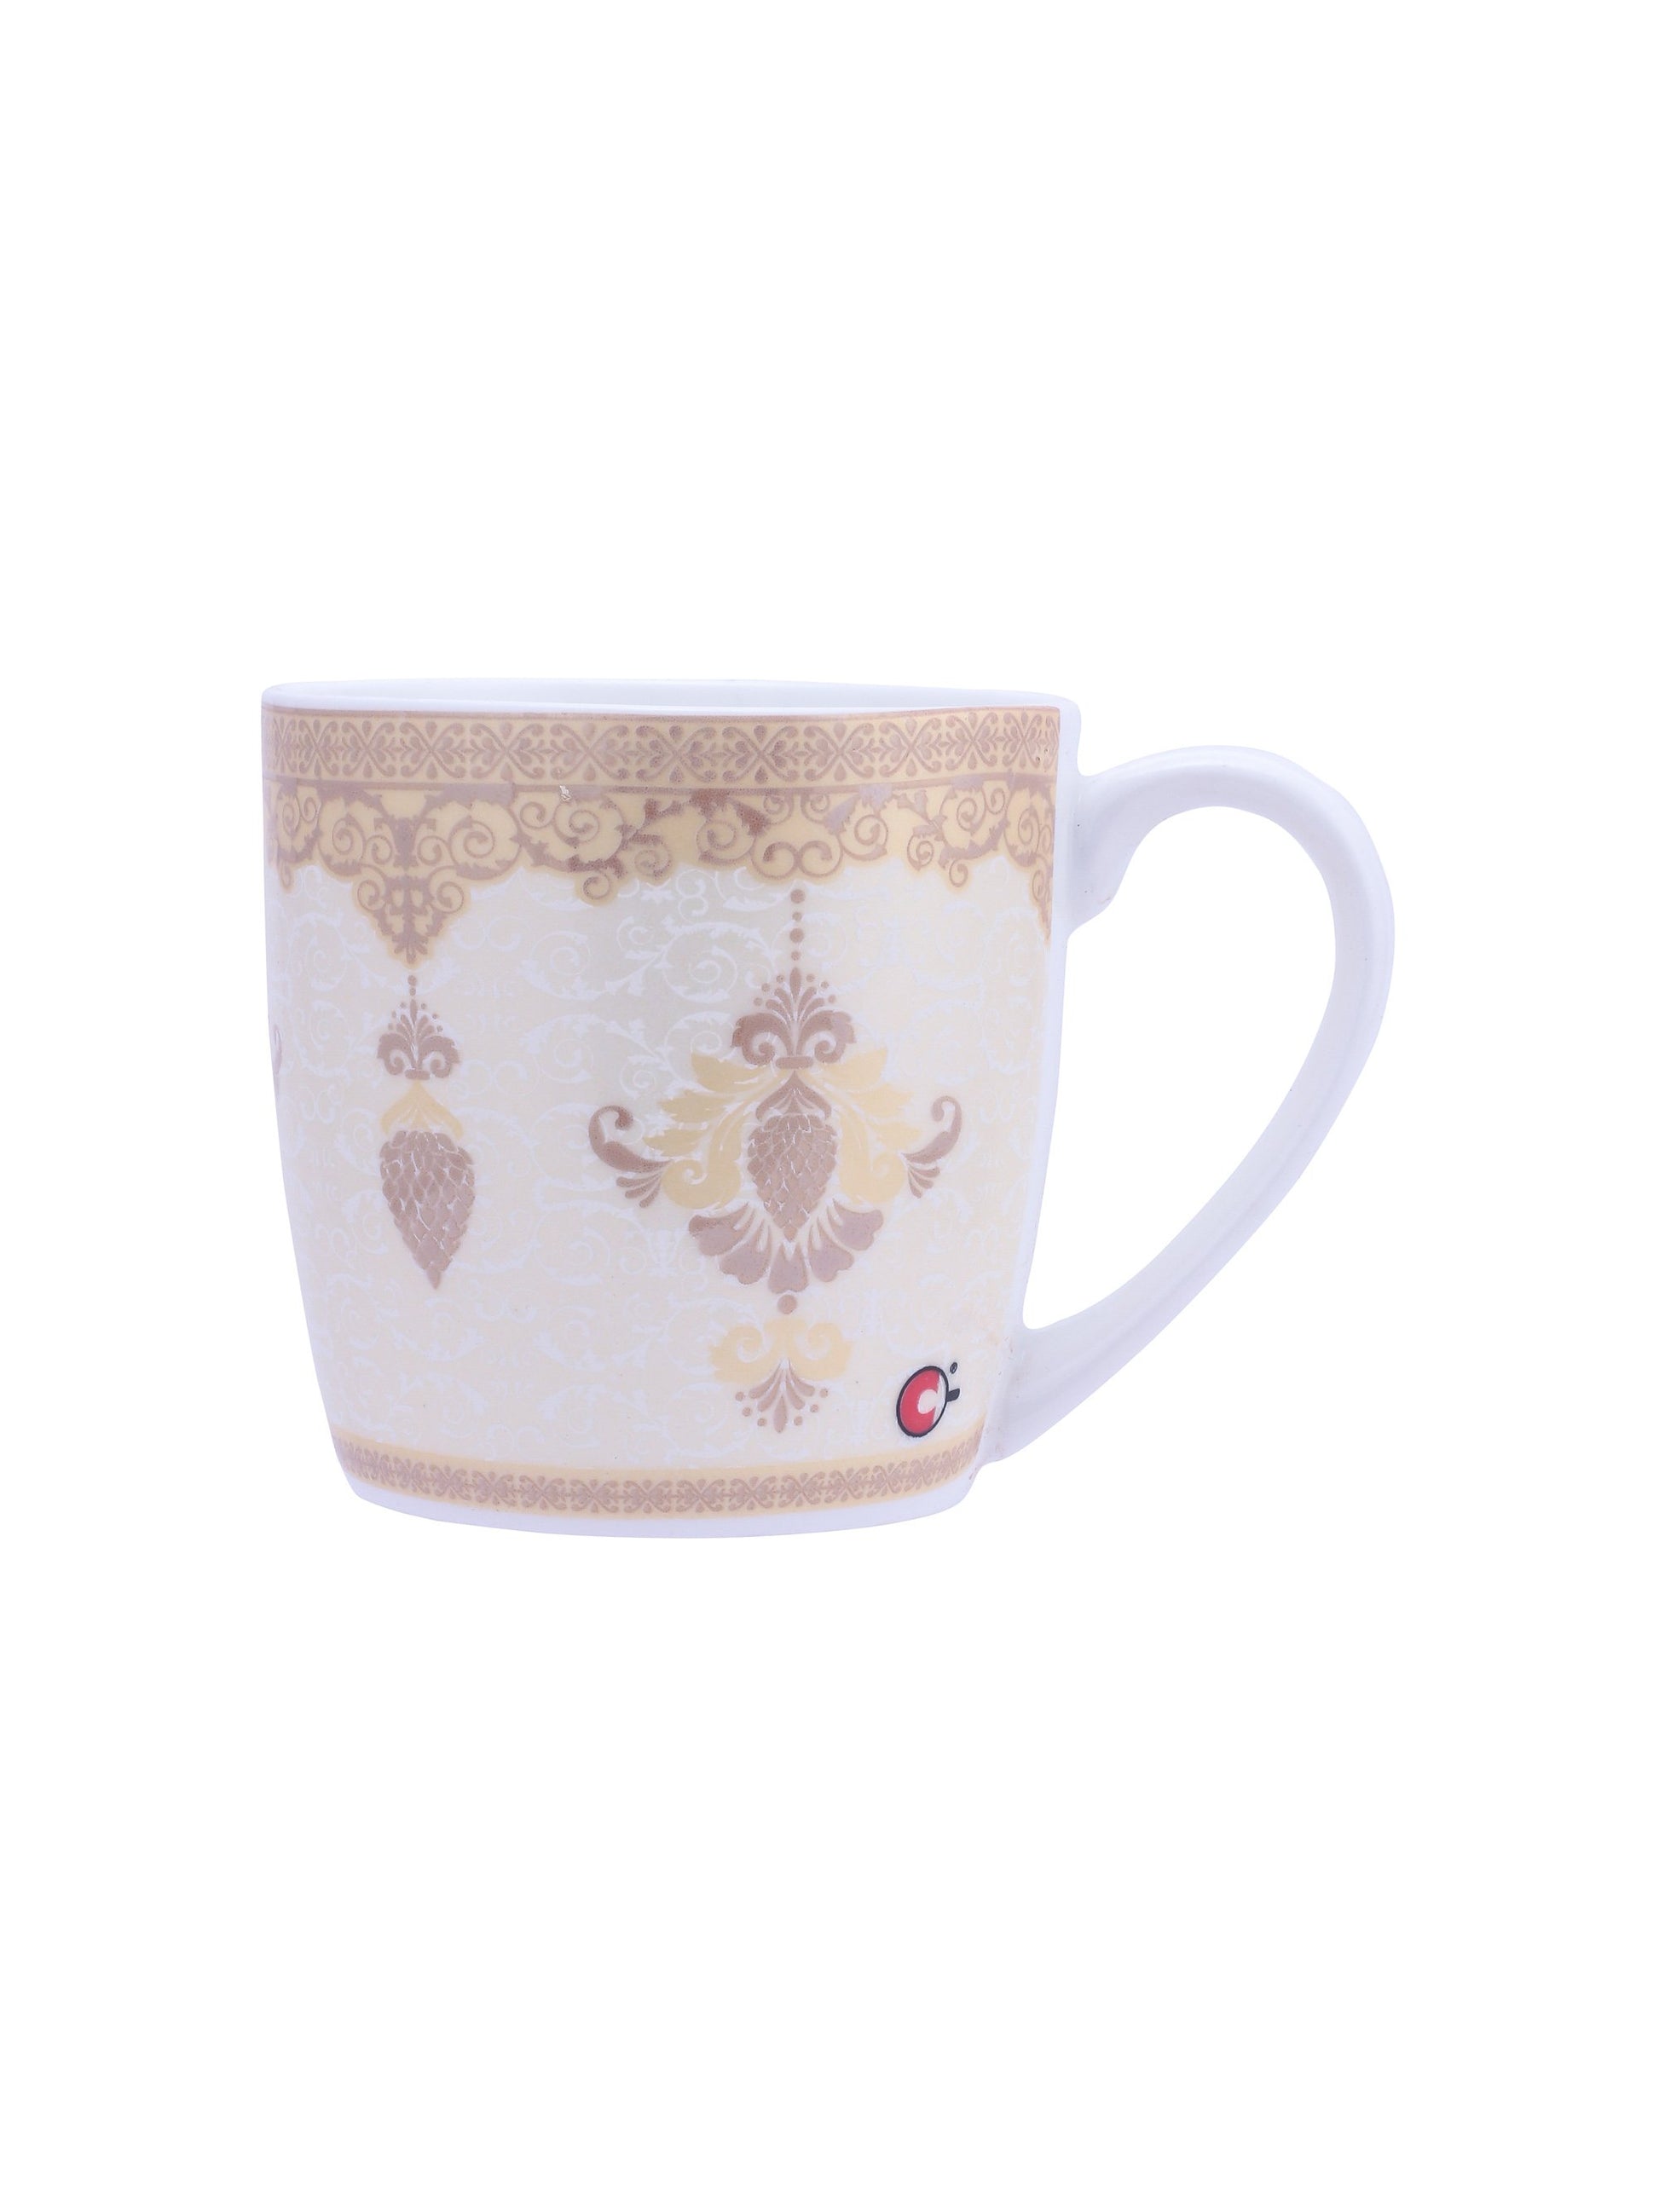 Alton Hilton Coffee & Tea Mugs, 220ml, Set of 6 (H375) - Clay Craft India